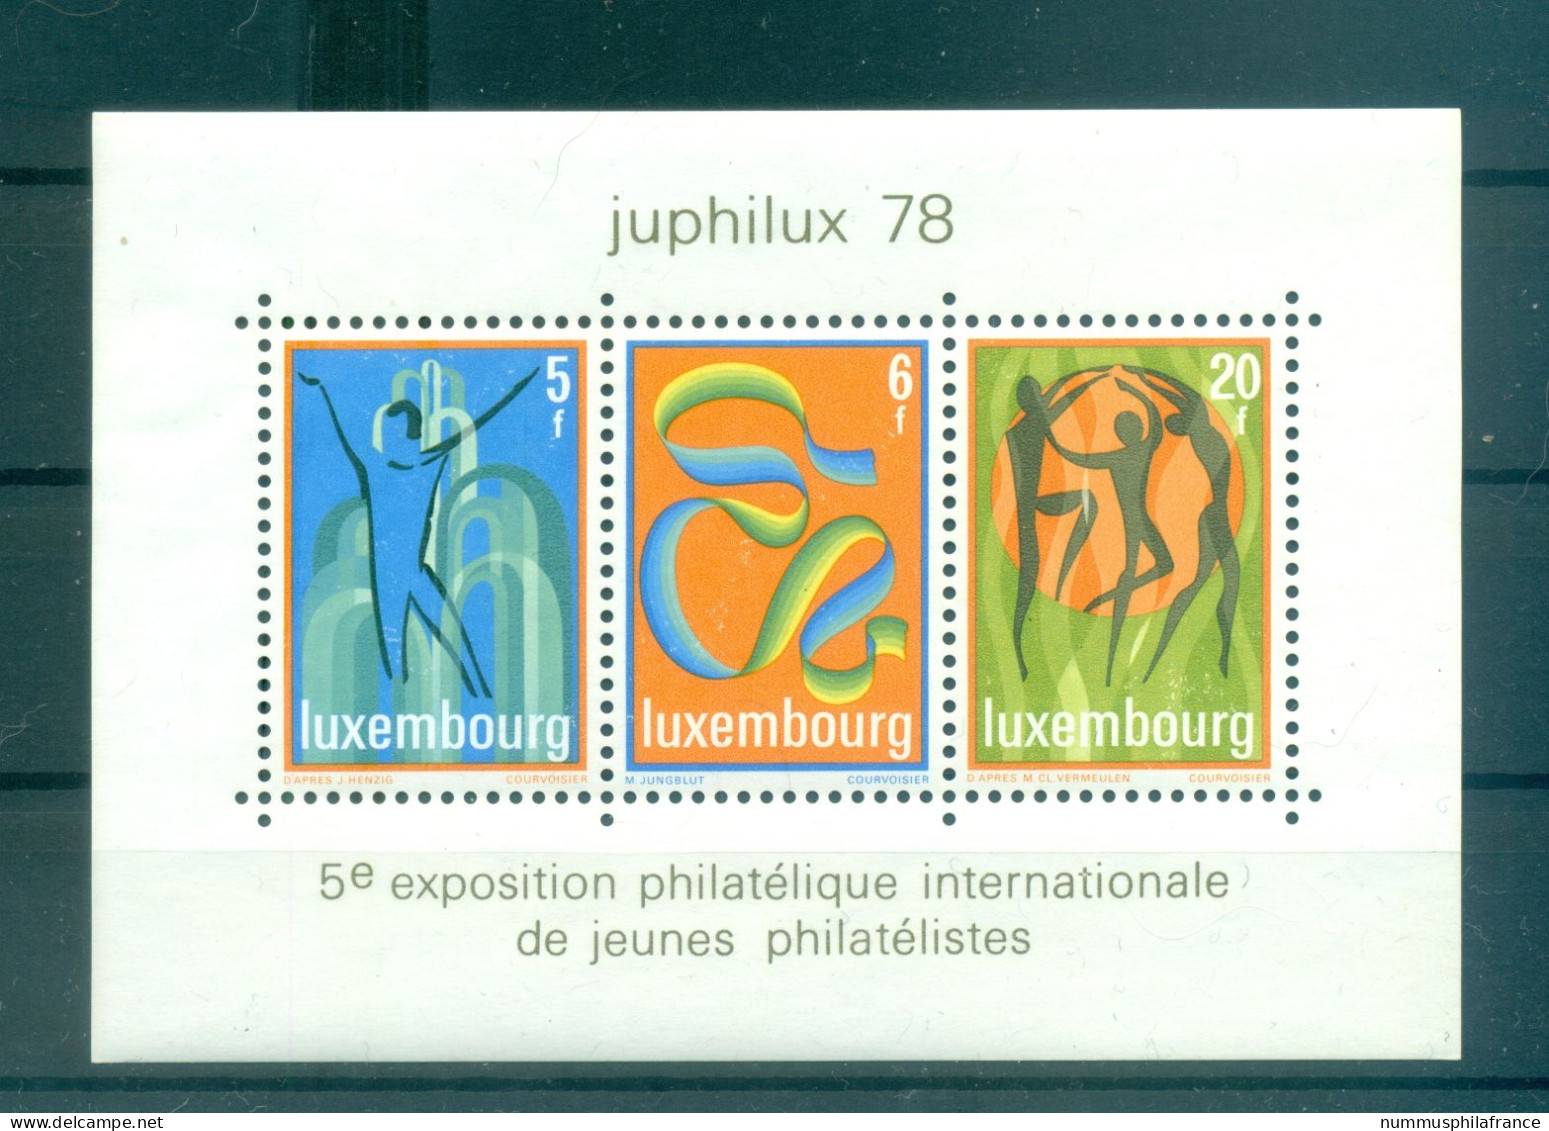 Luxembourg 1978 - Y & T Feuillet N. 12 - Juphilux '78 (Michel Feuillet N. 12) - Blocs & Feuillets